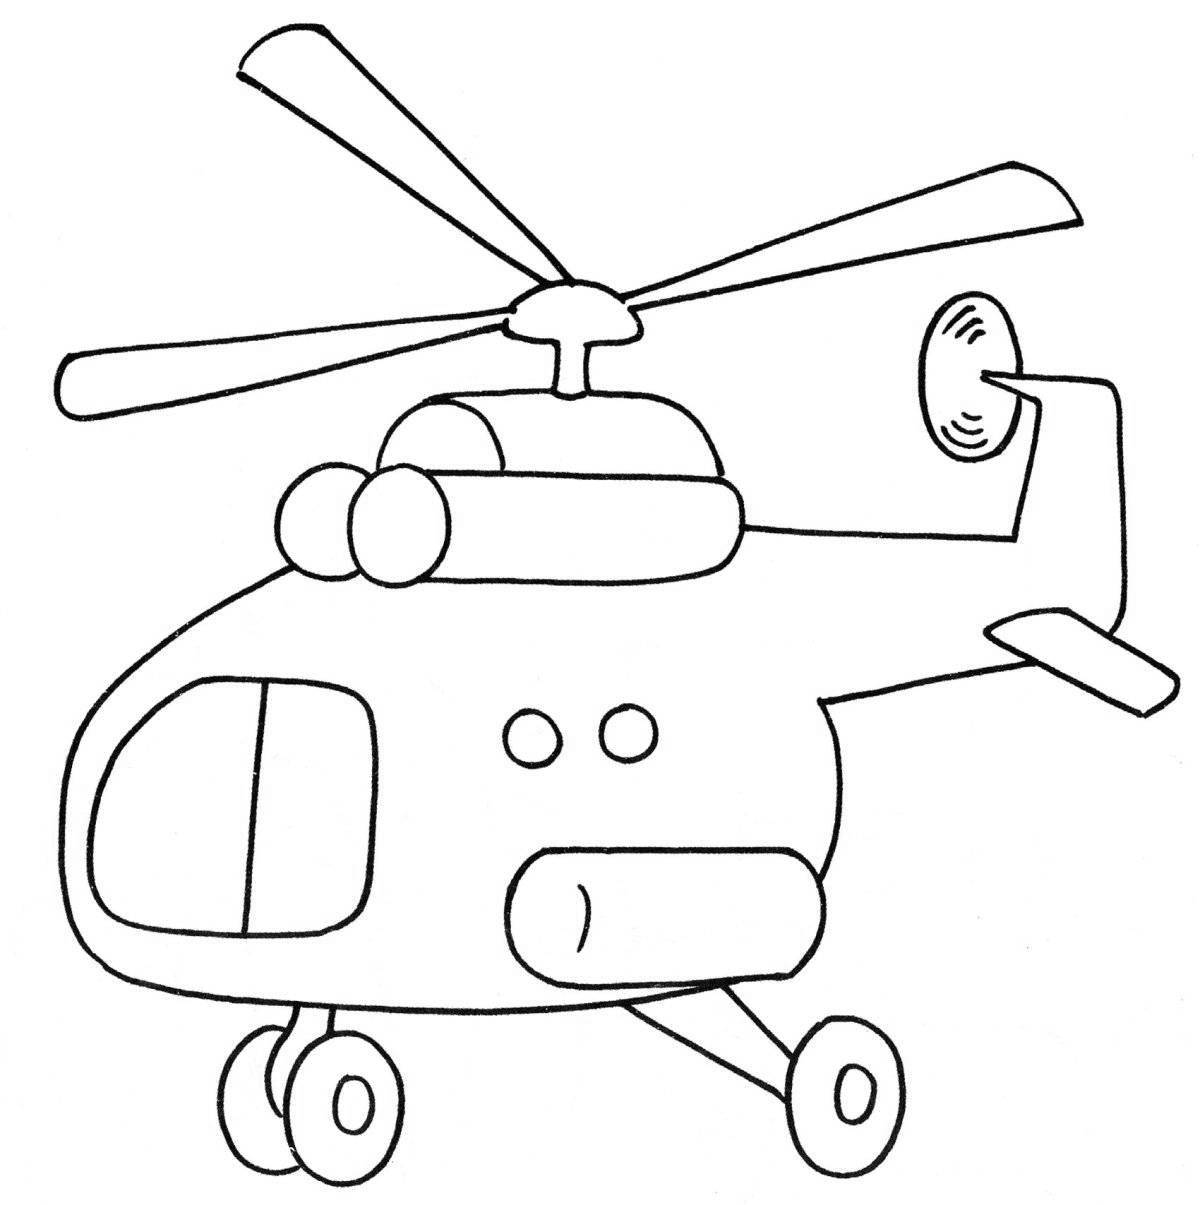 Замечательная раскраска вертолета для дошкольников